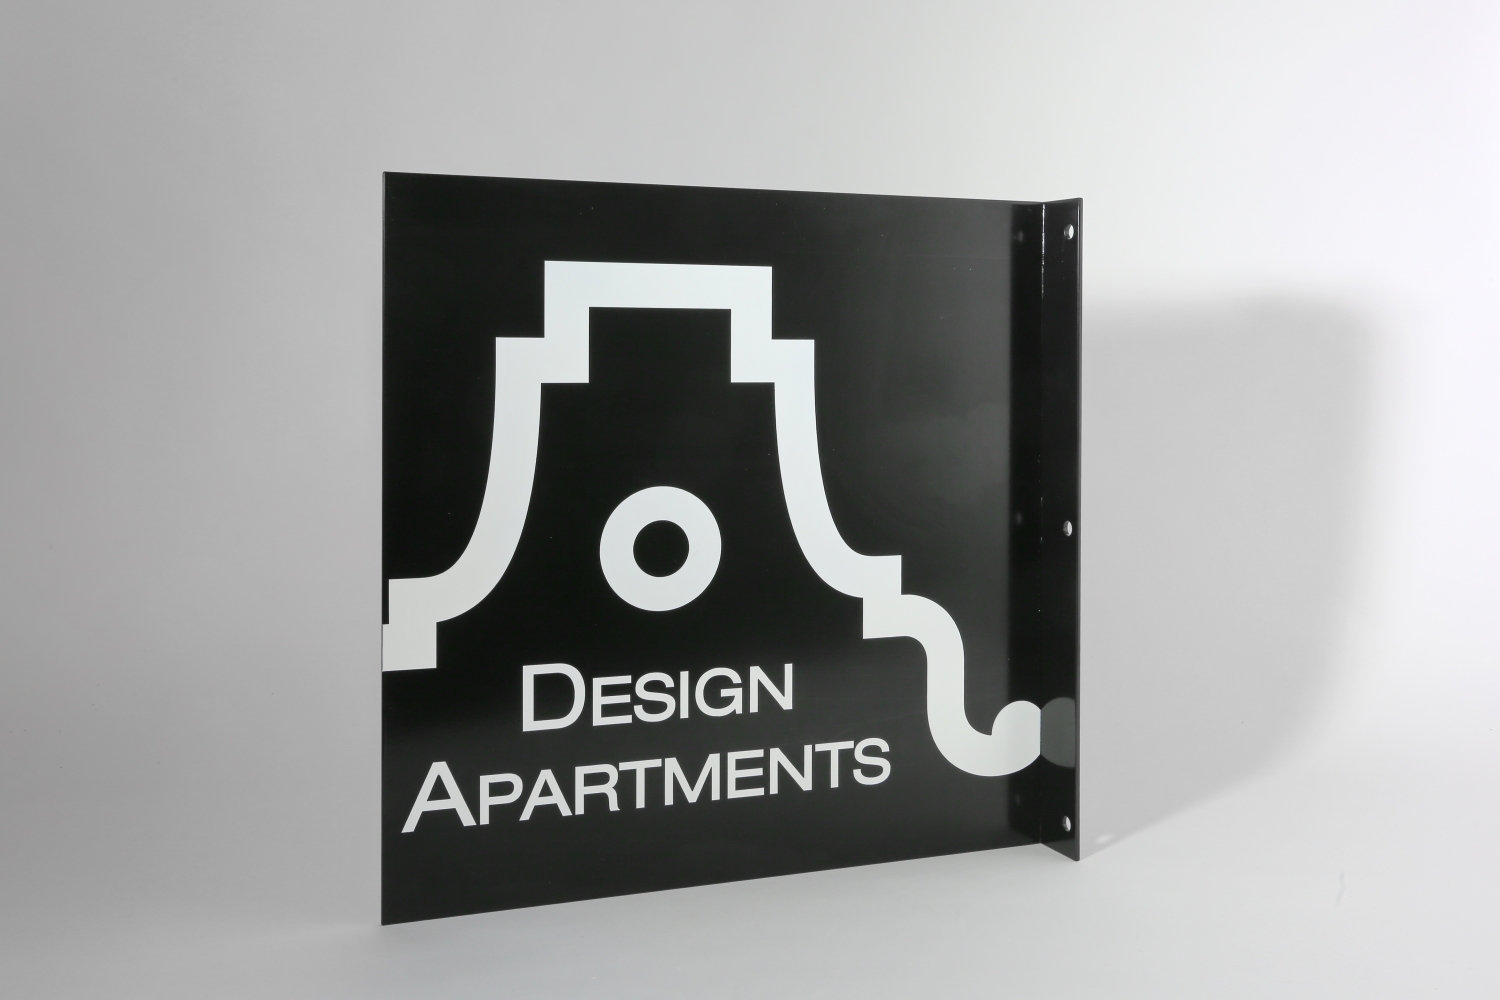 Ausleger Design Apartments